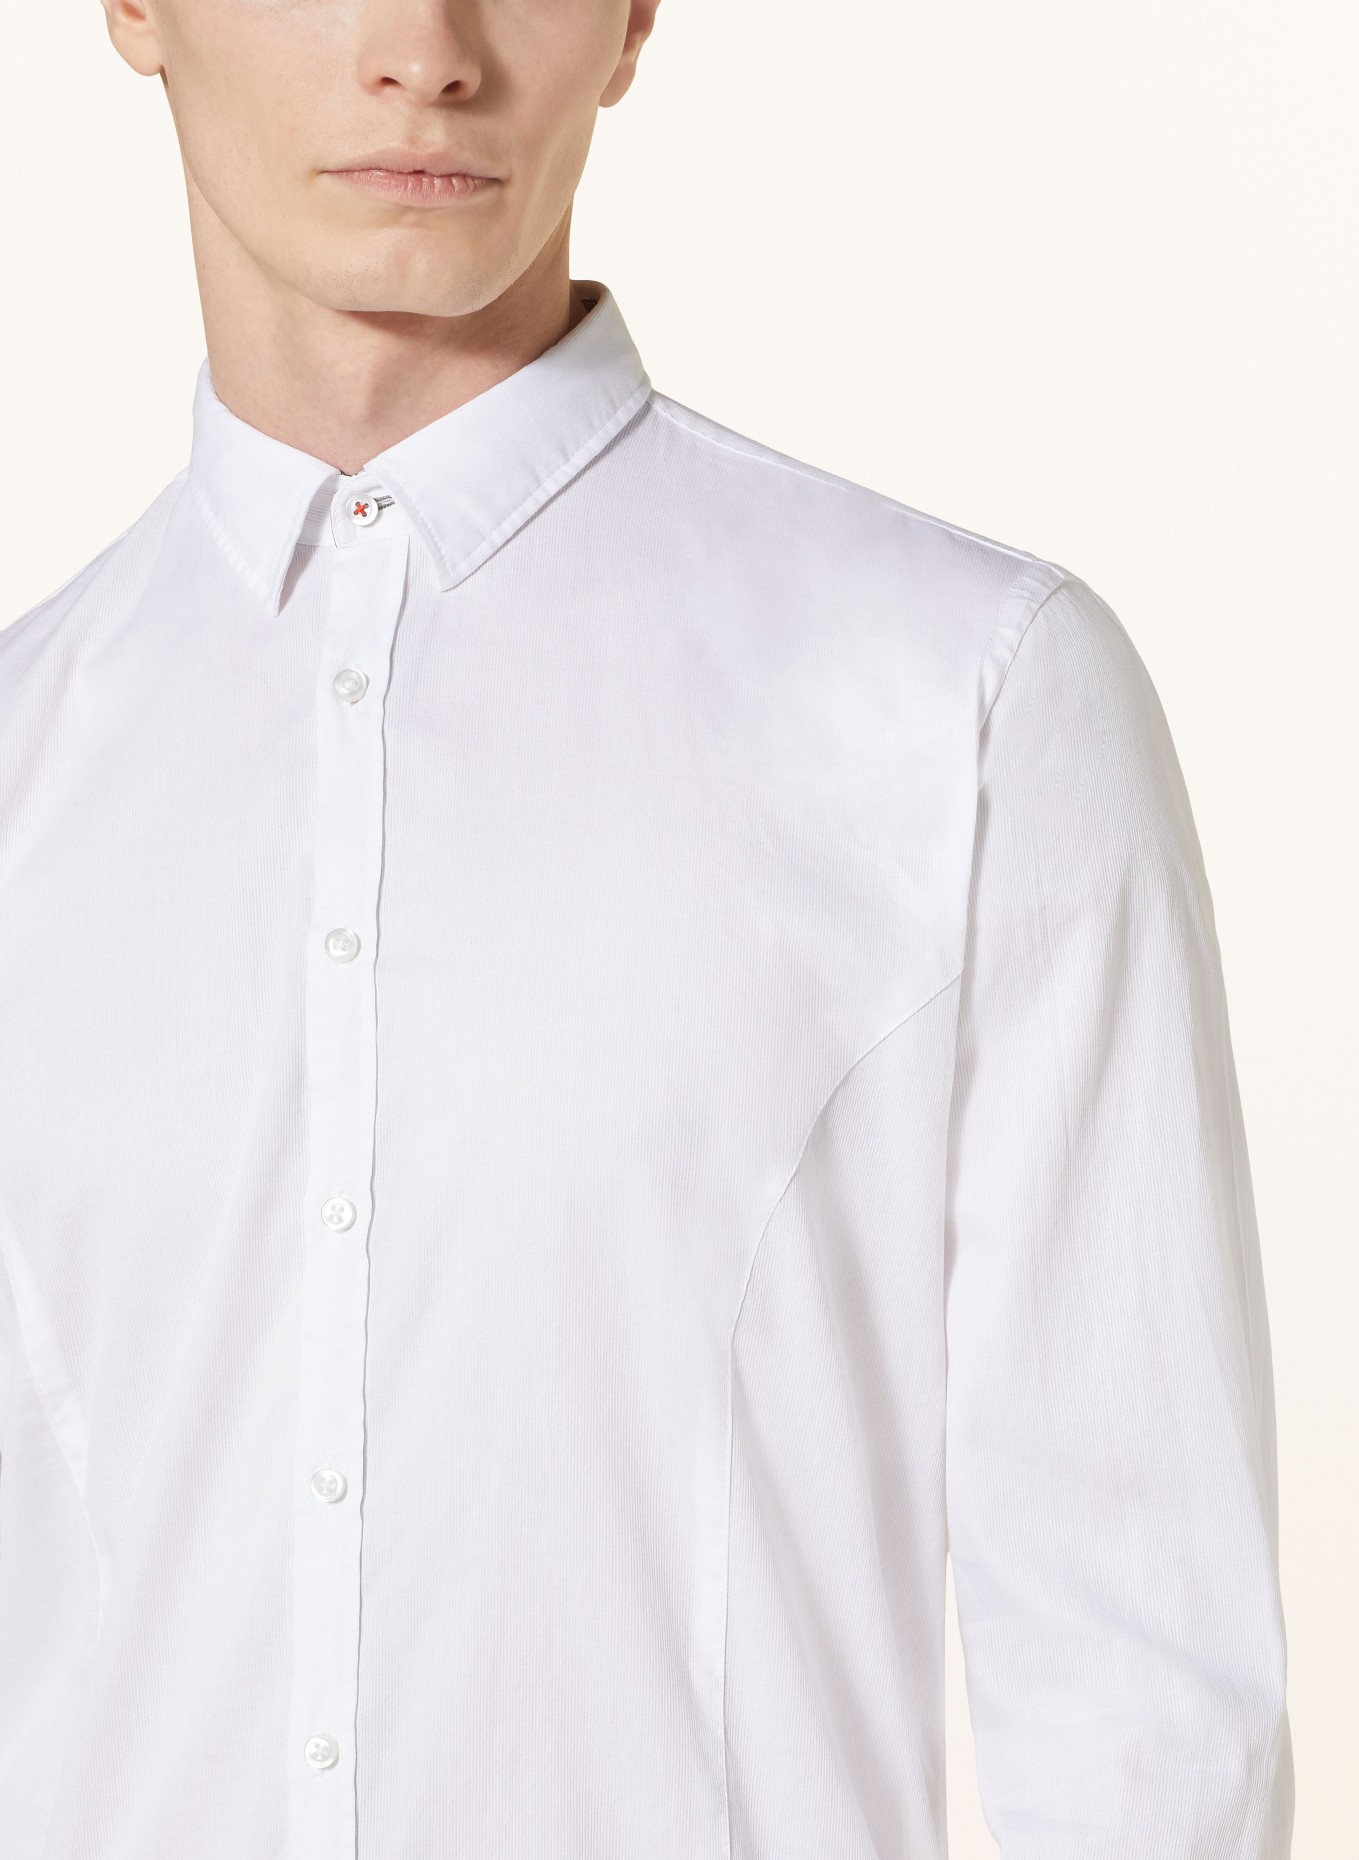 Q1 Manufaktur Shirt premium fit, Color: WHITE (Image 4)